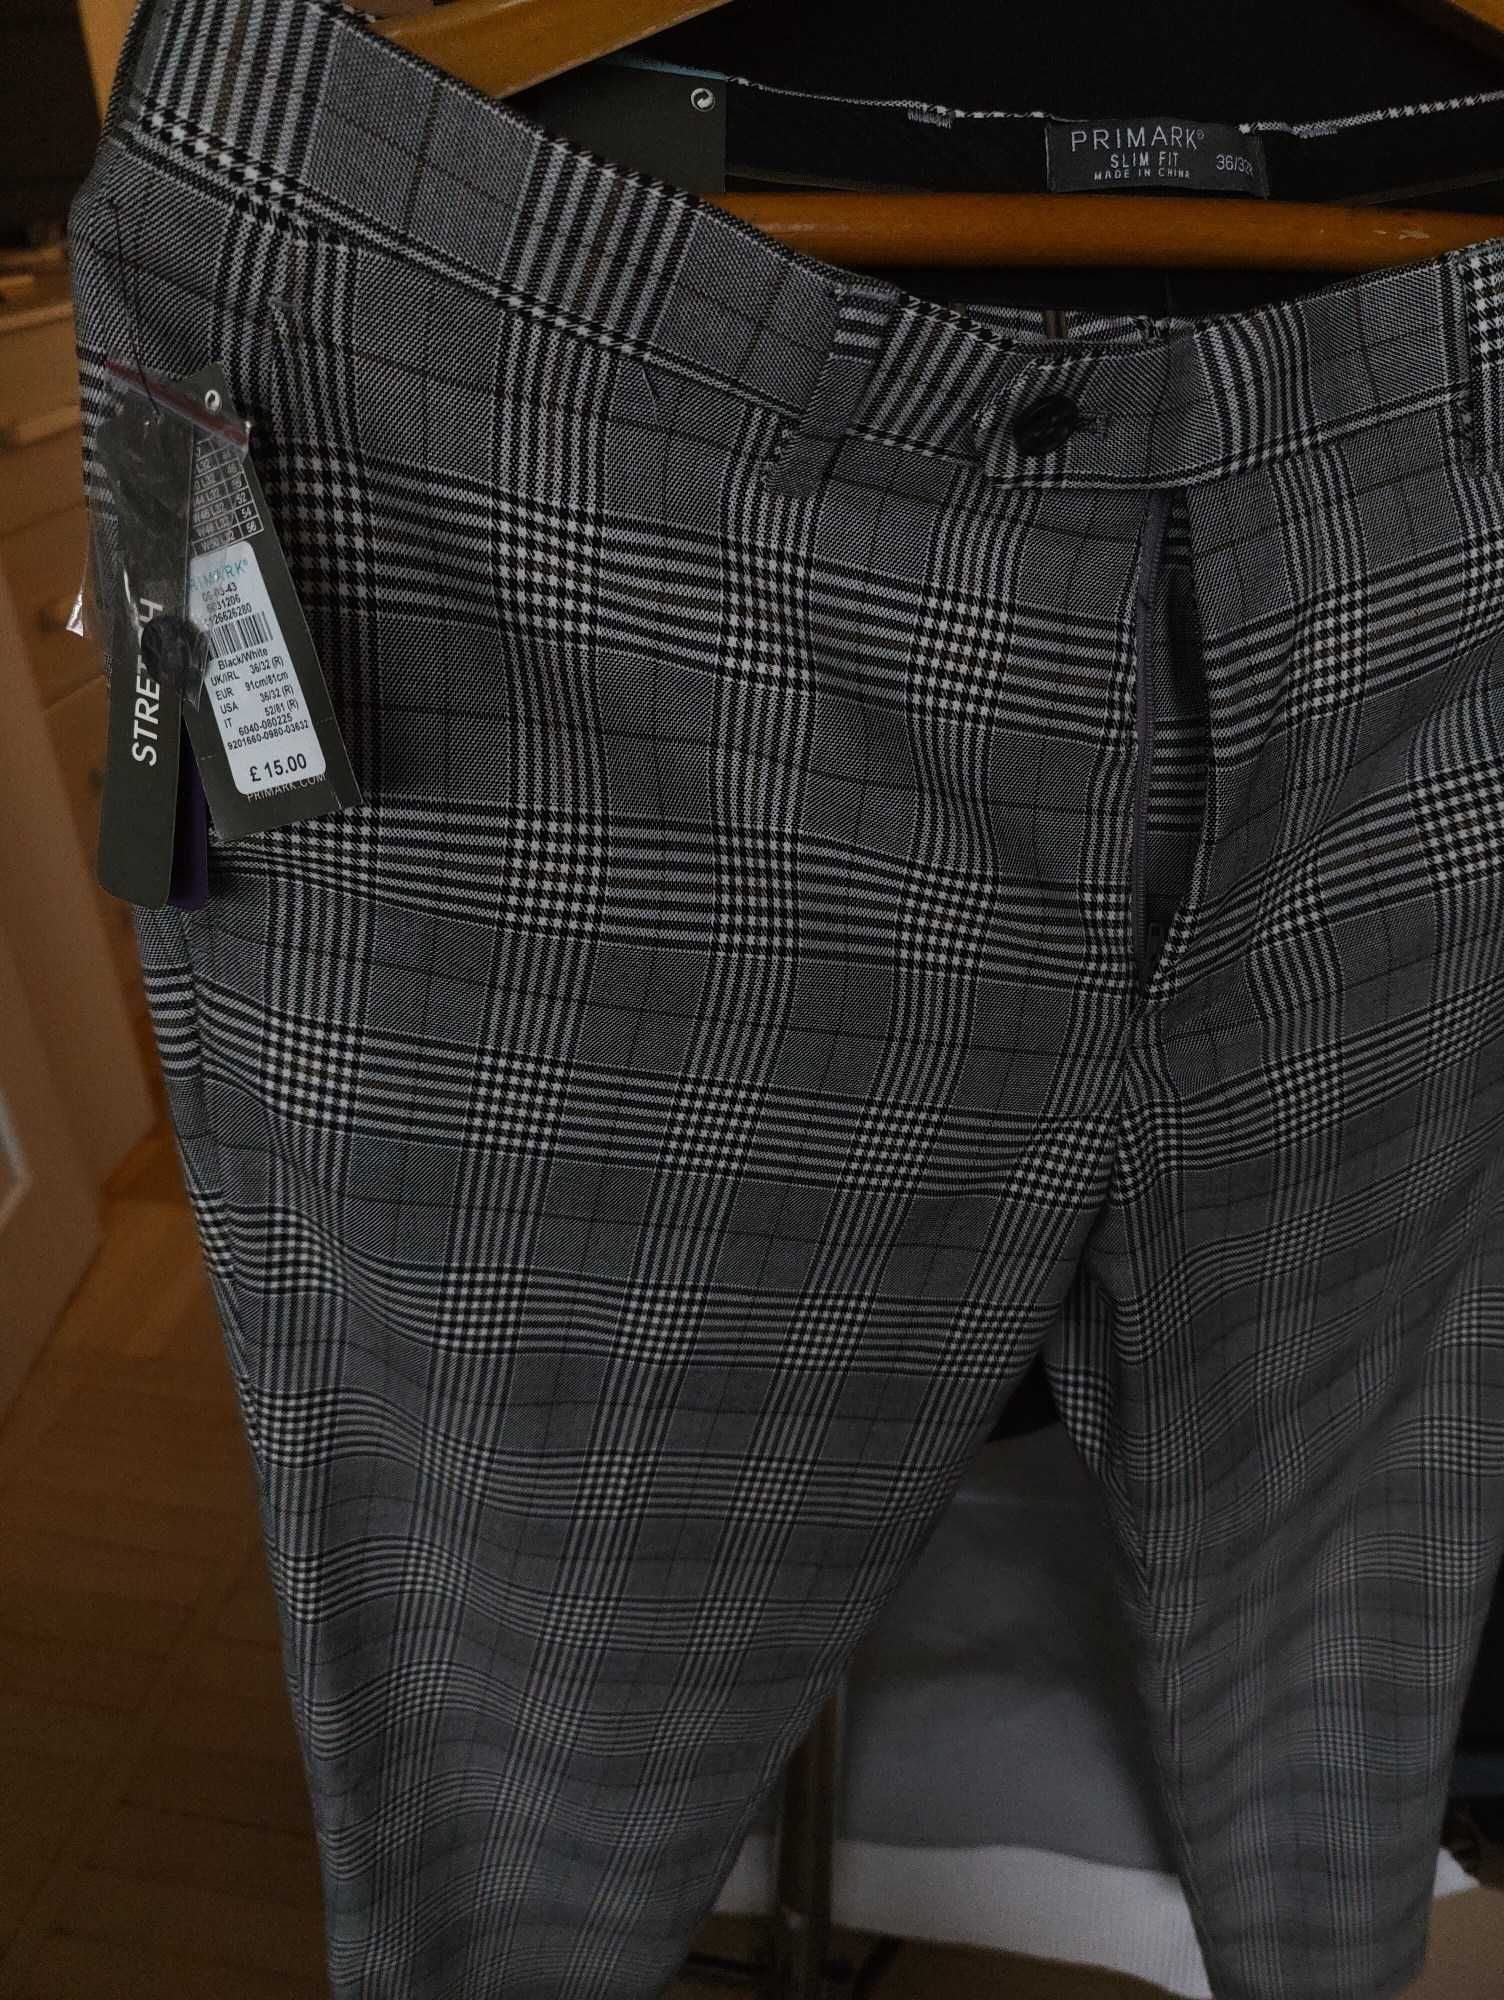 Джинсы брюки Primark trousers United Kingdom w36 stretch grey.